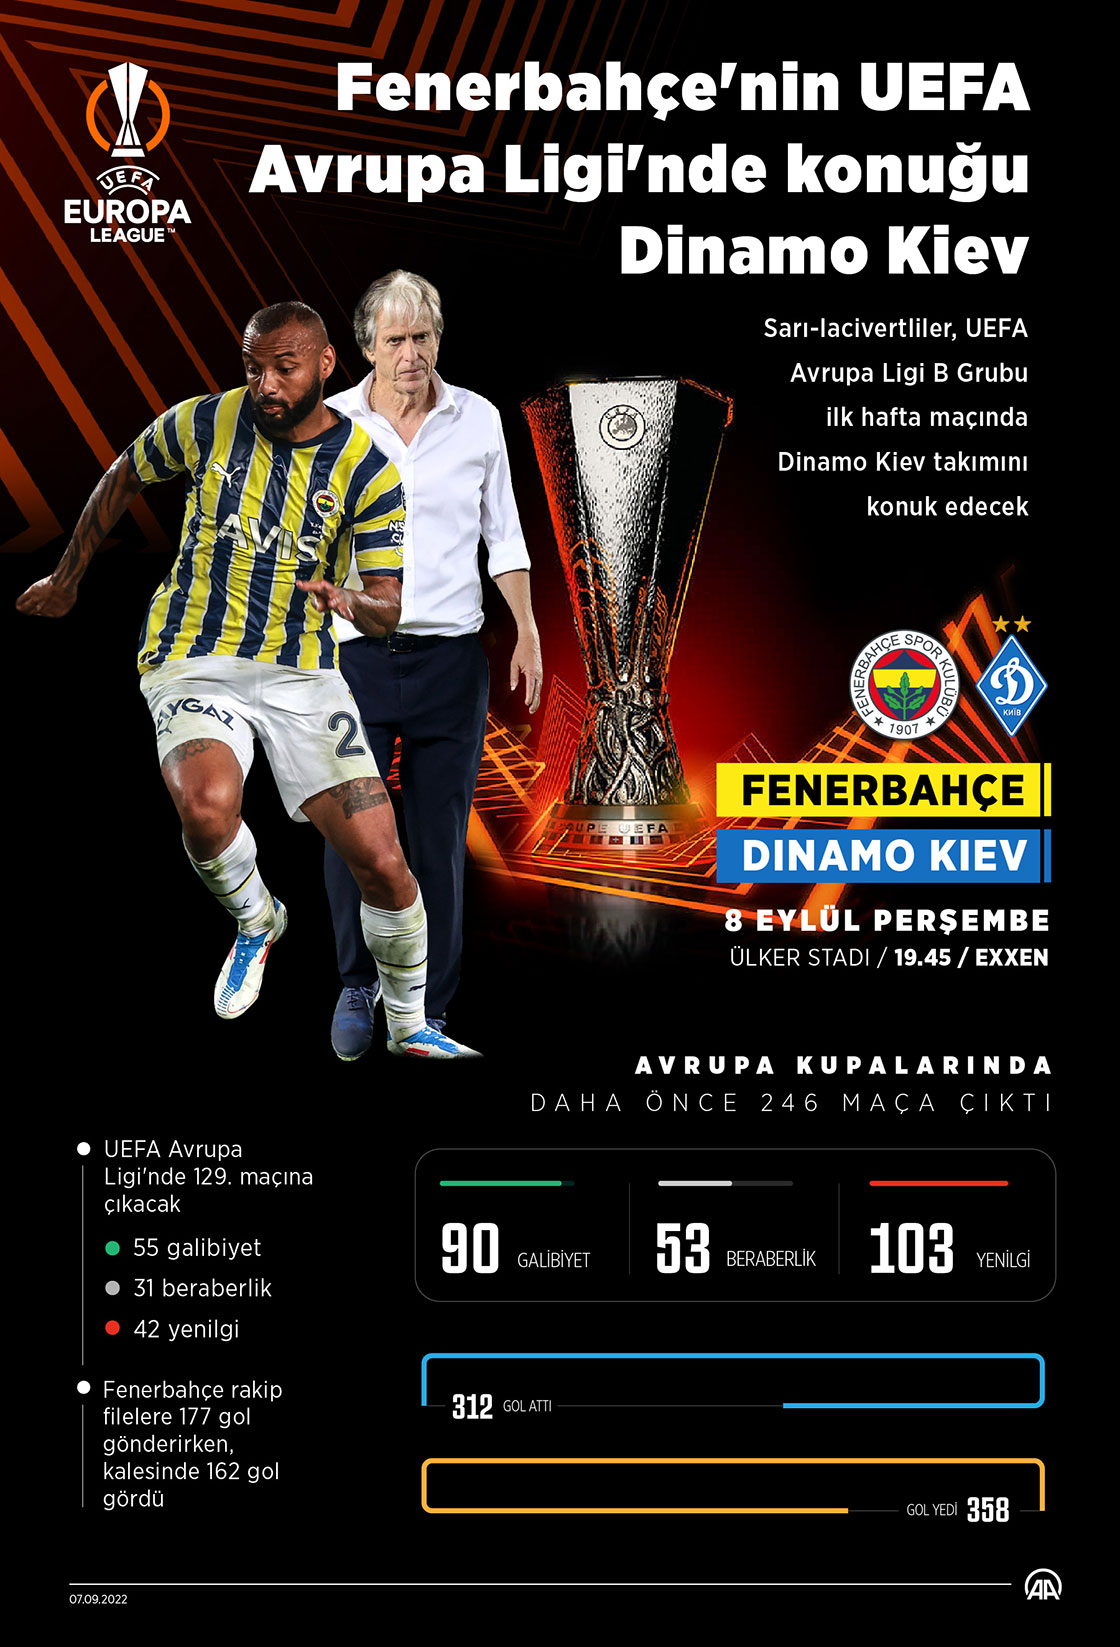 Fenerbahçe'nin UEFA Avrupa Ligi'nde konuğu Dinamo Kiev